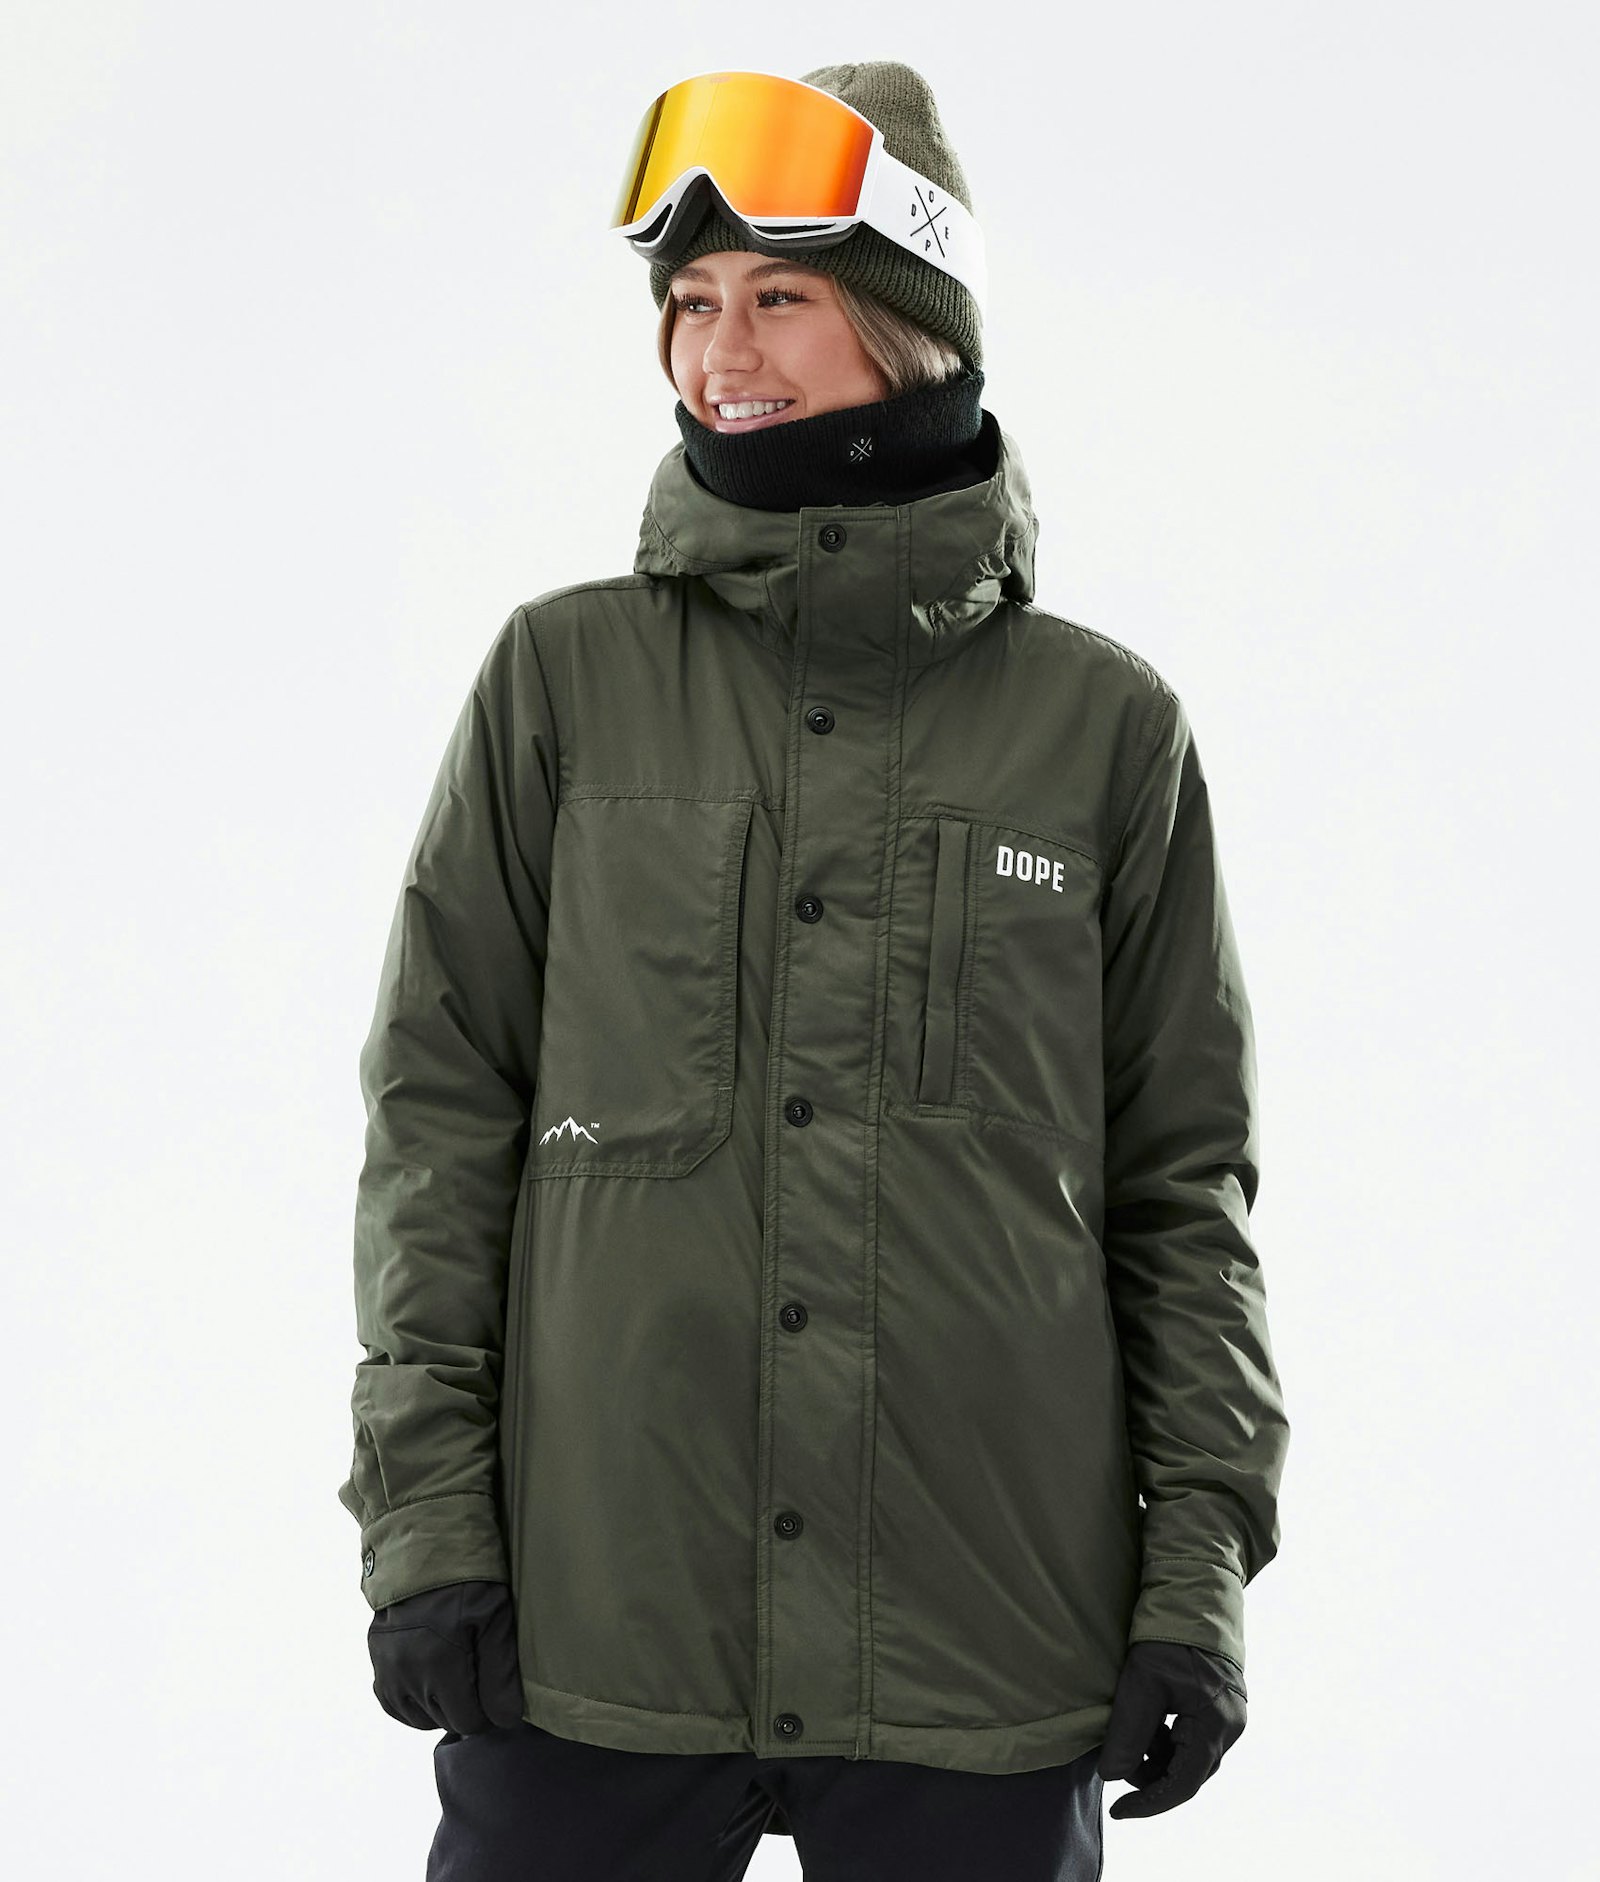 Dope Insulated W Midlayer Jacket Ski Women Olive Green